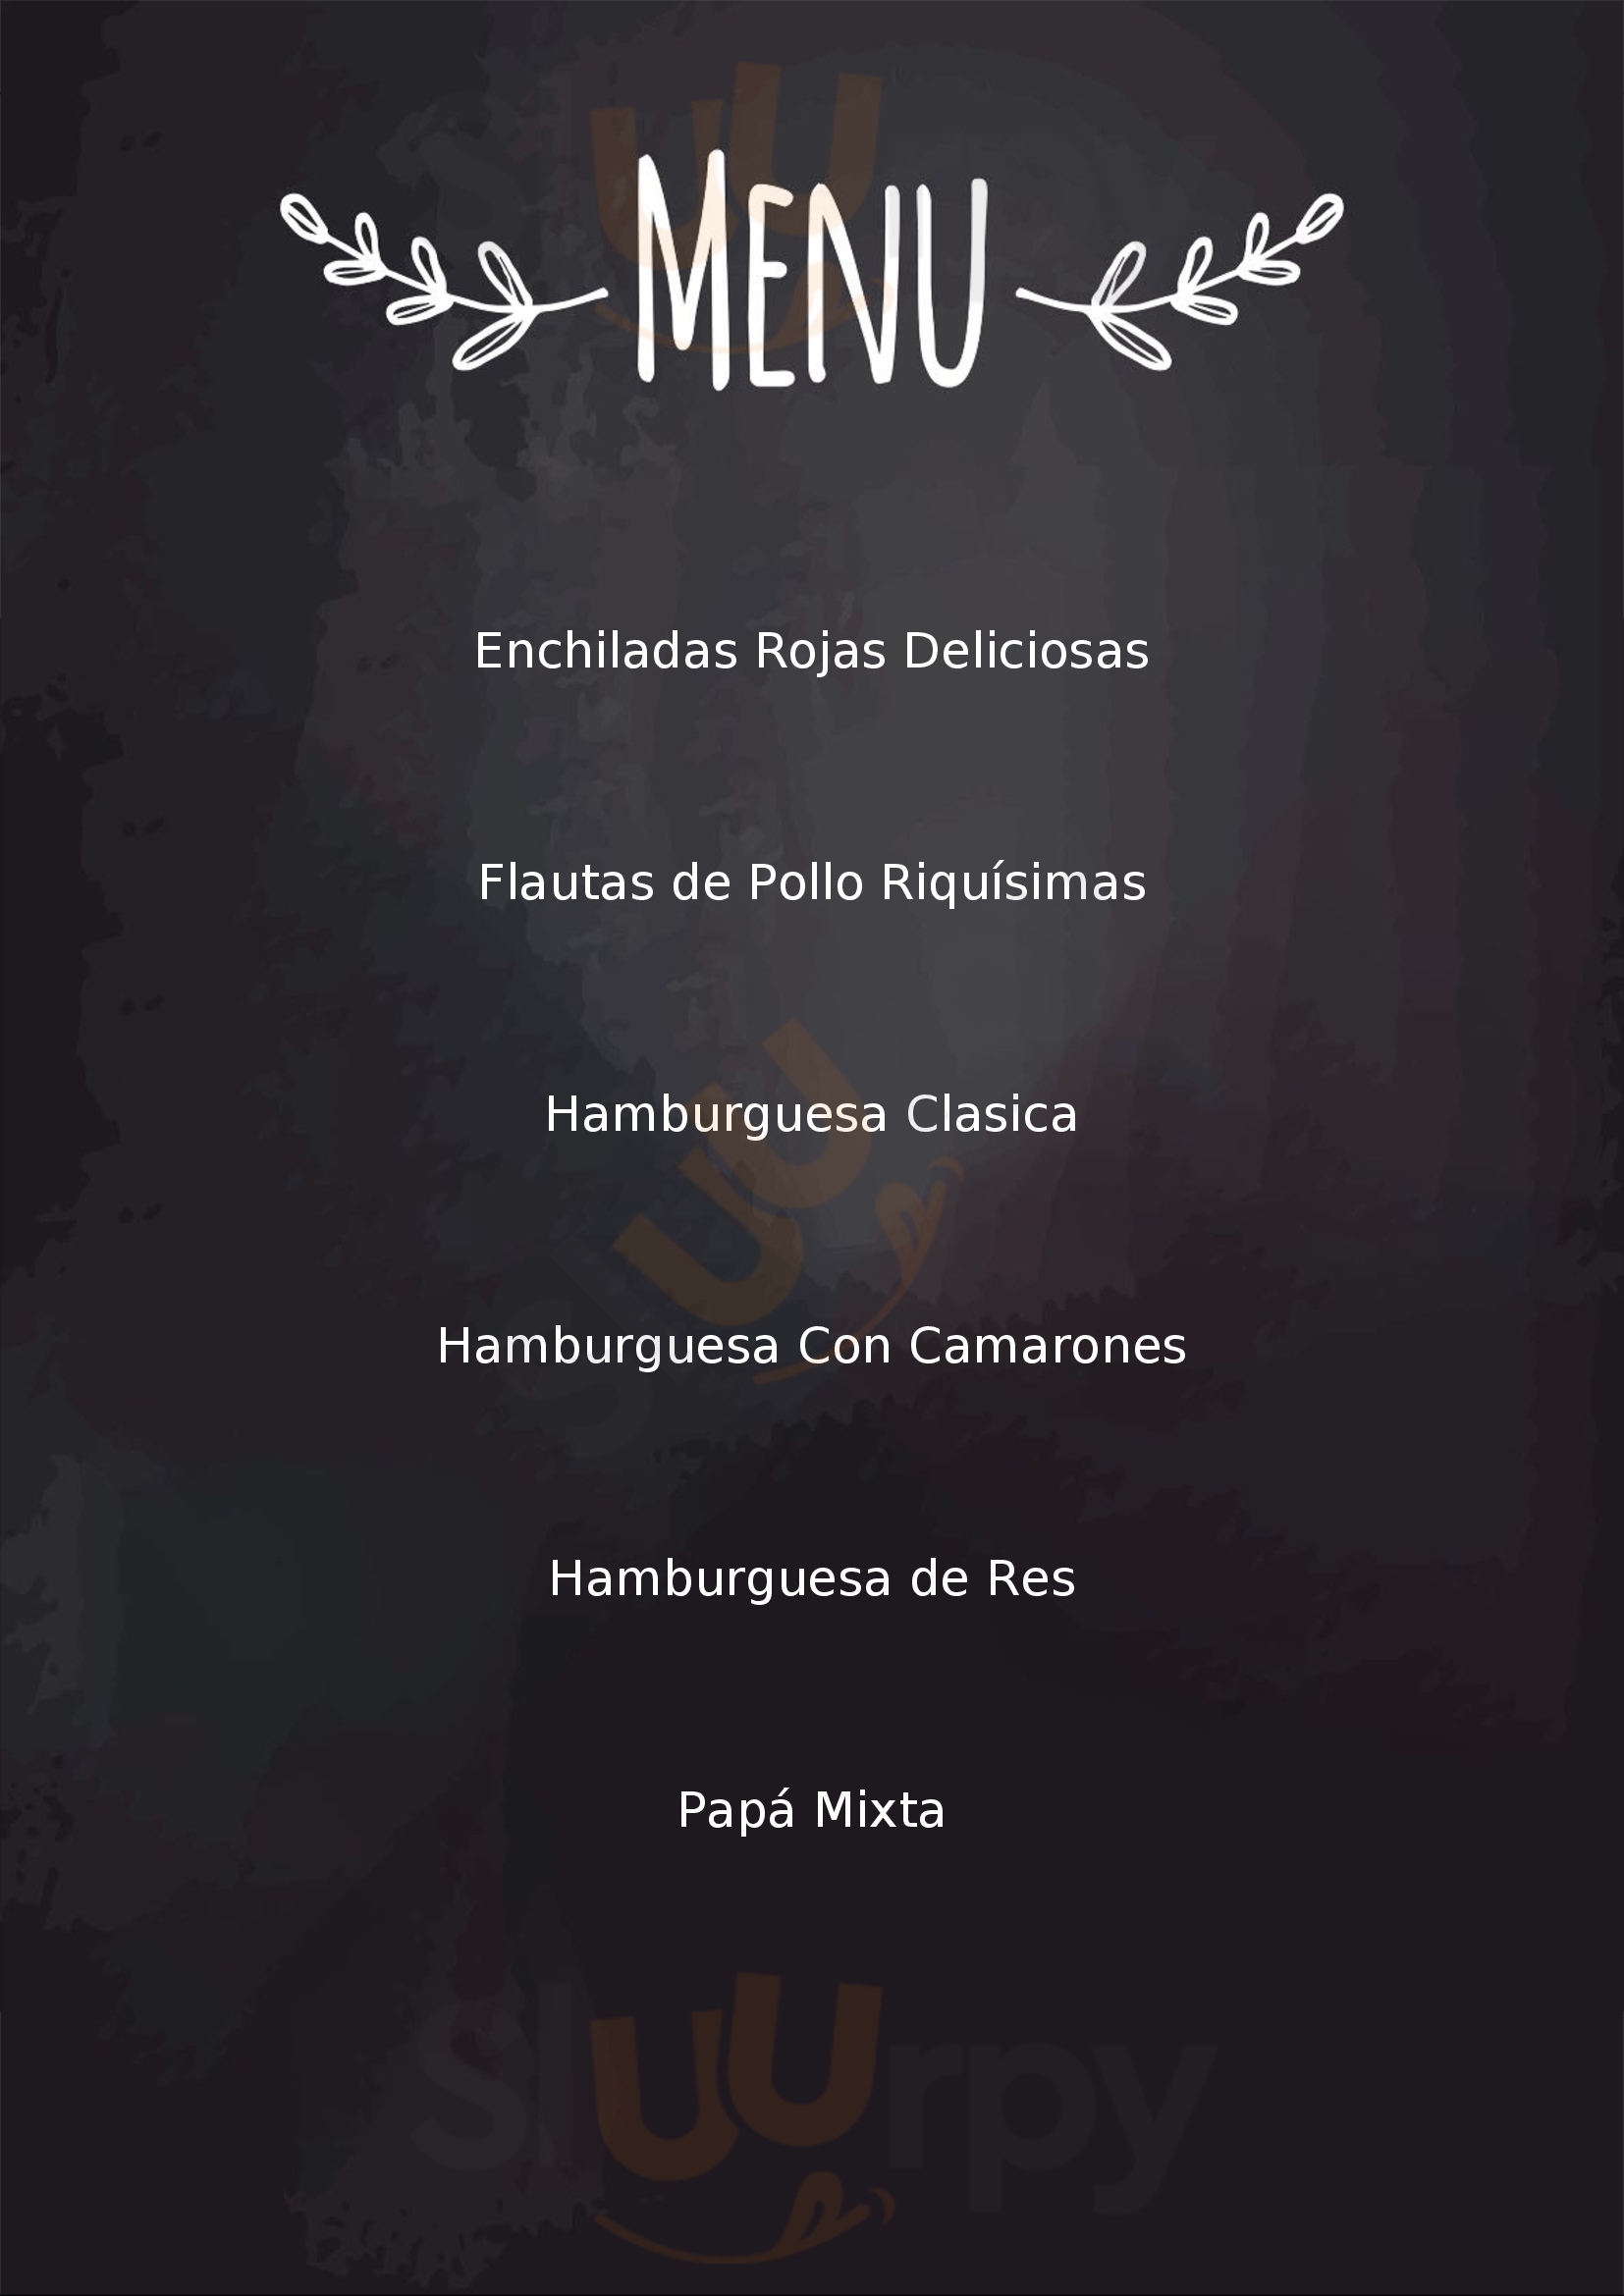 La Chona Burger Santiago Menu - 1